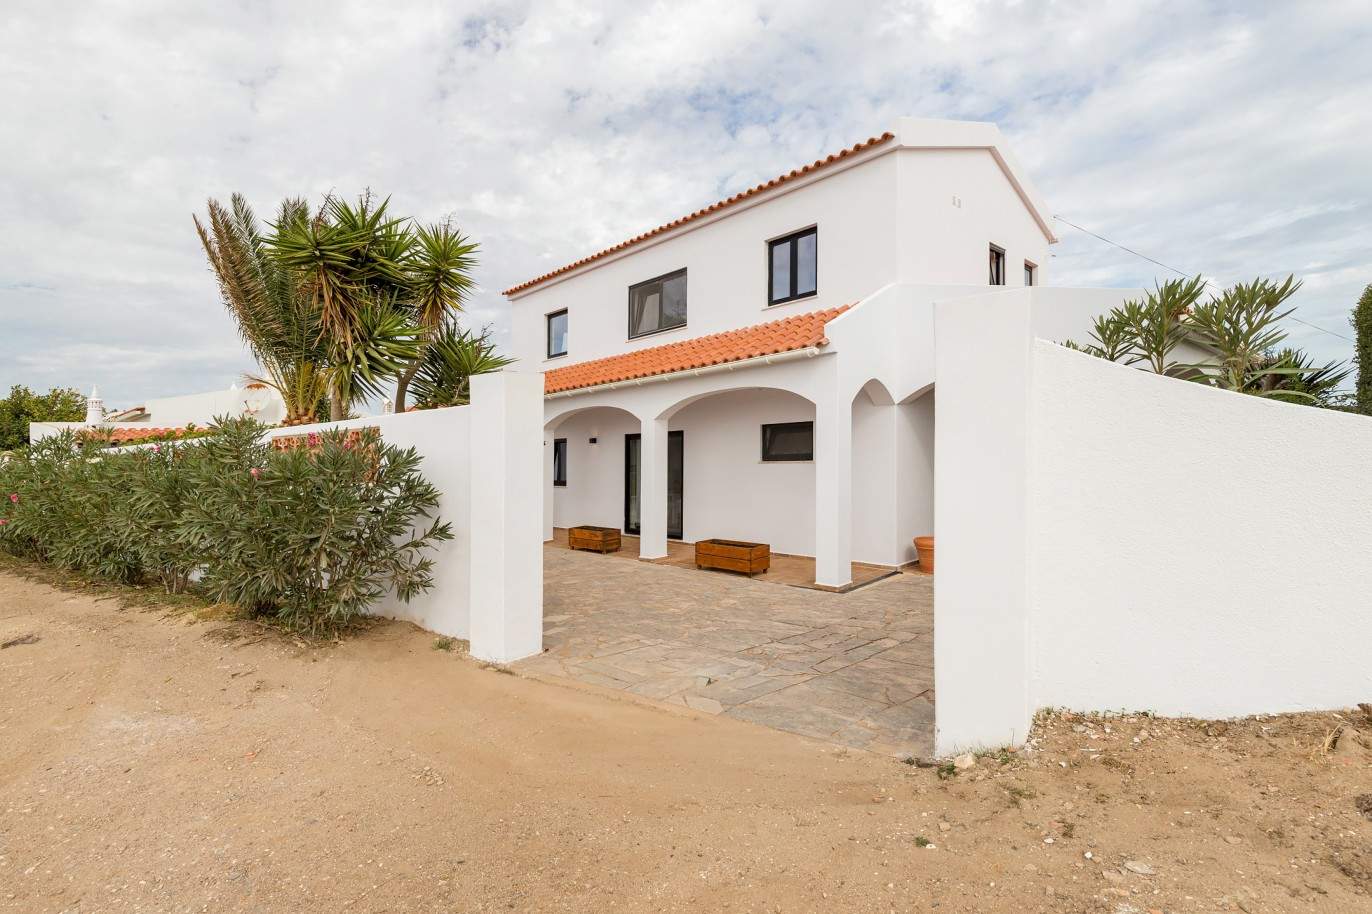 Fantástica moradia V5 com vista mar, para venda, em Figueira, Algarve_210439